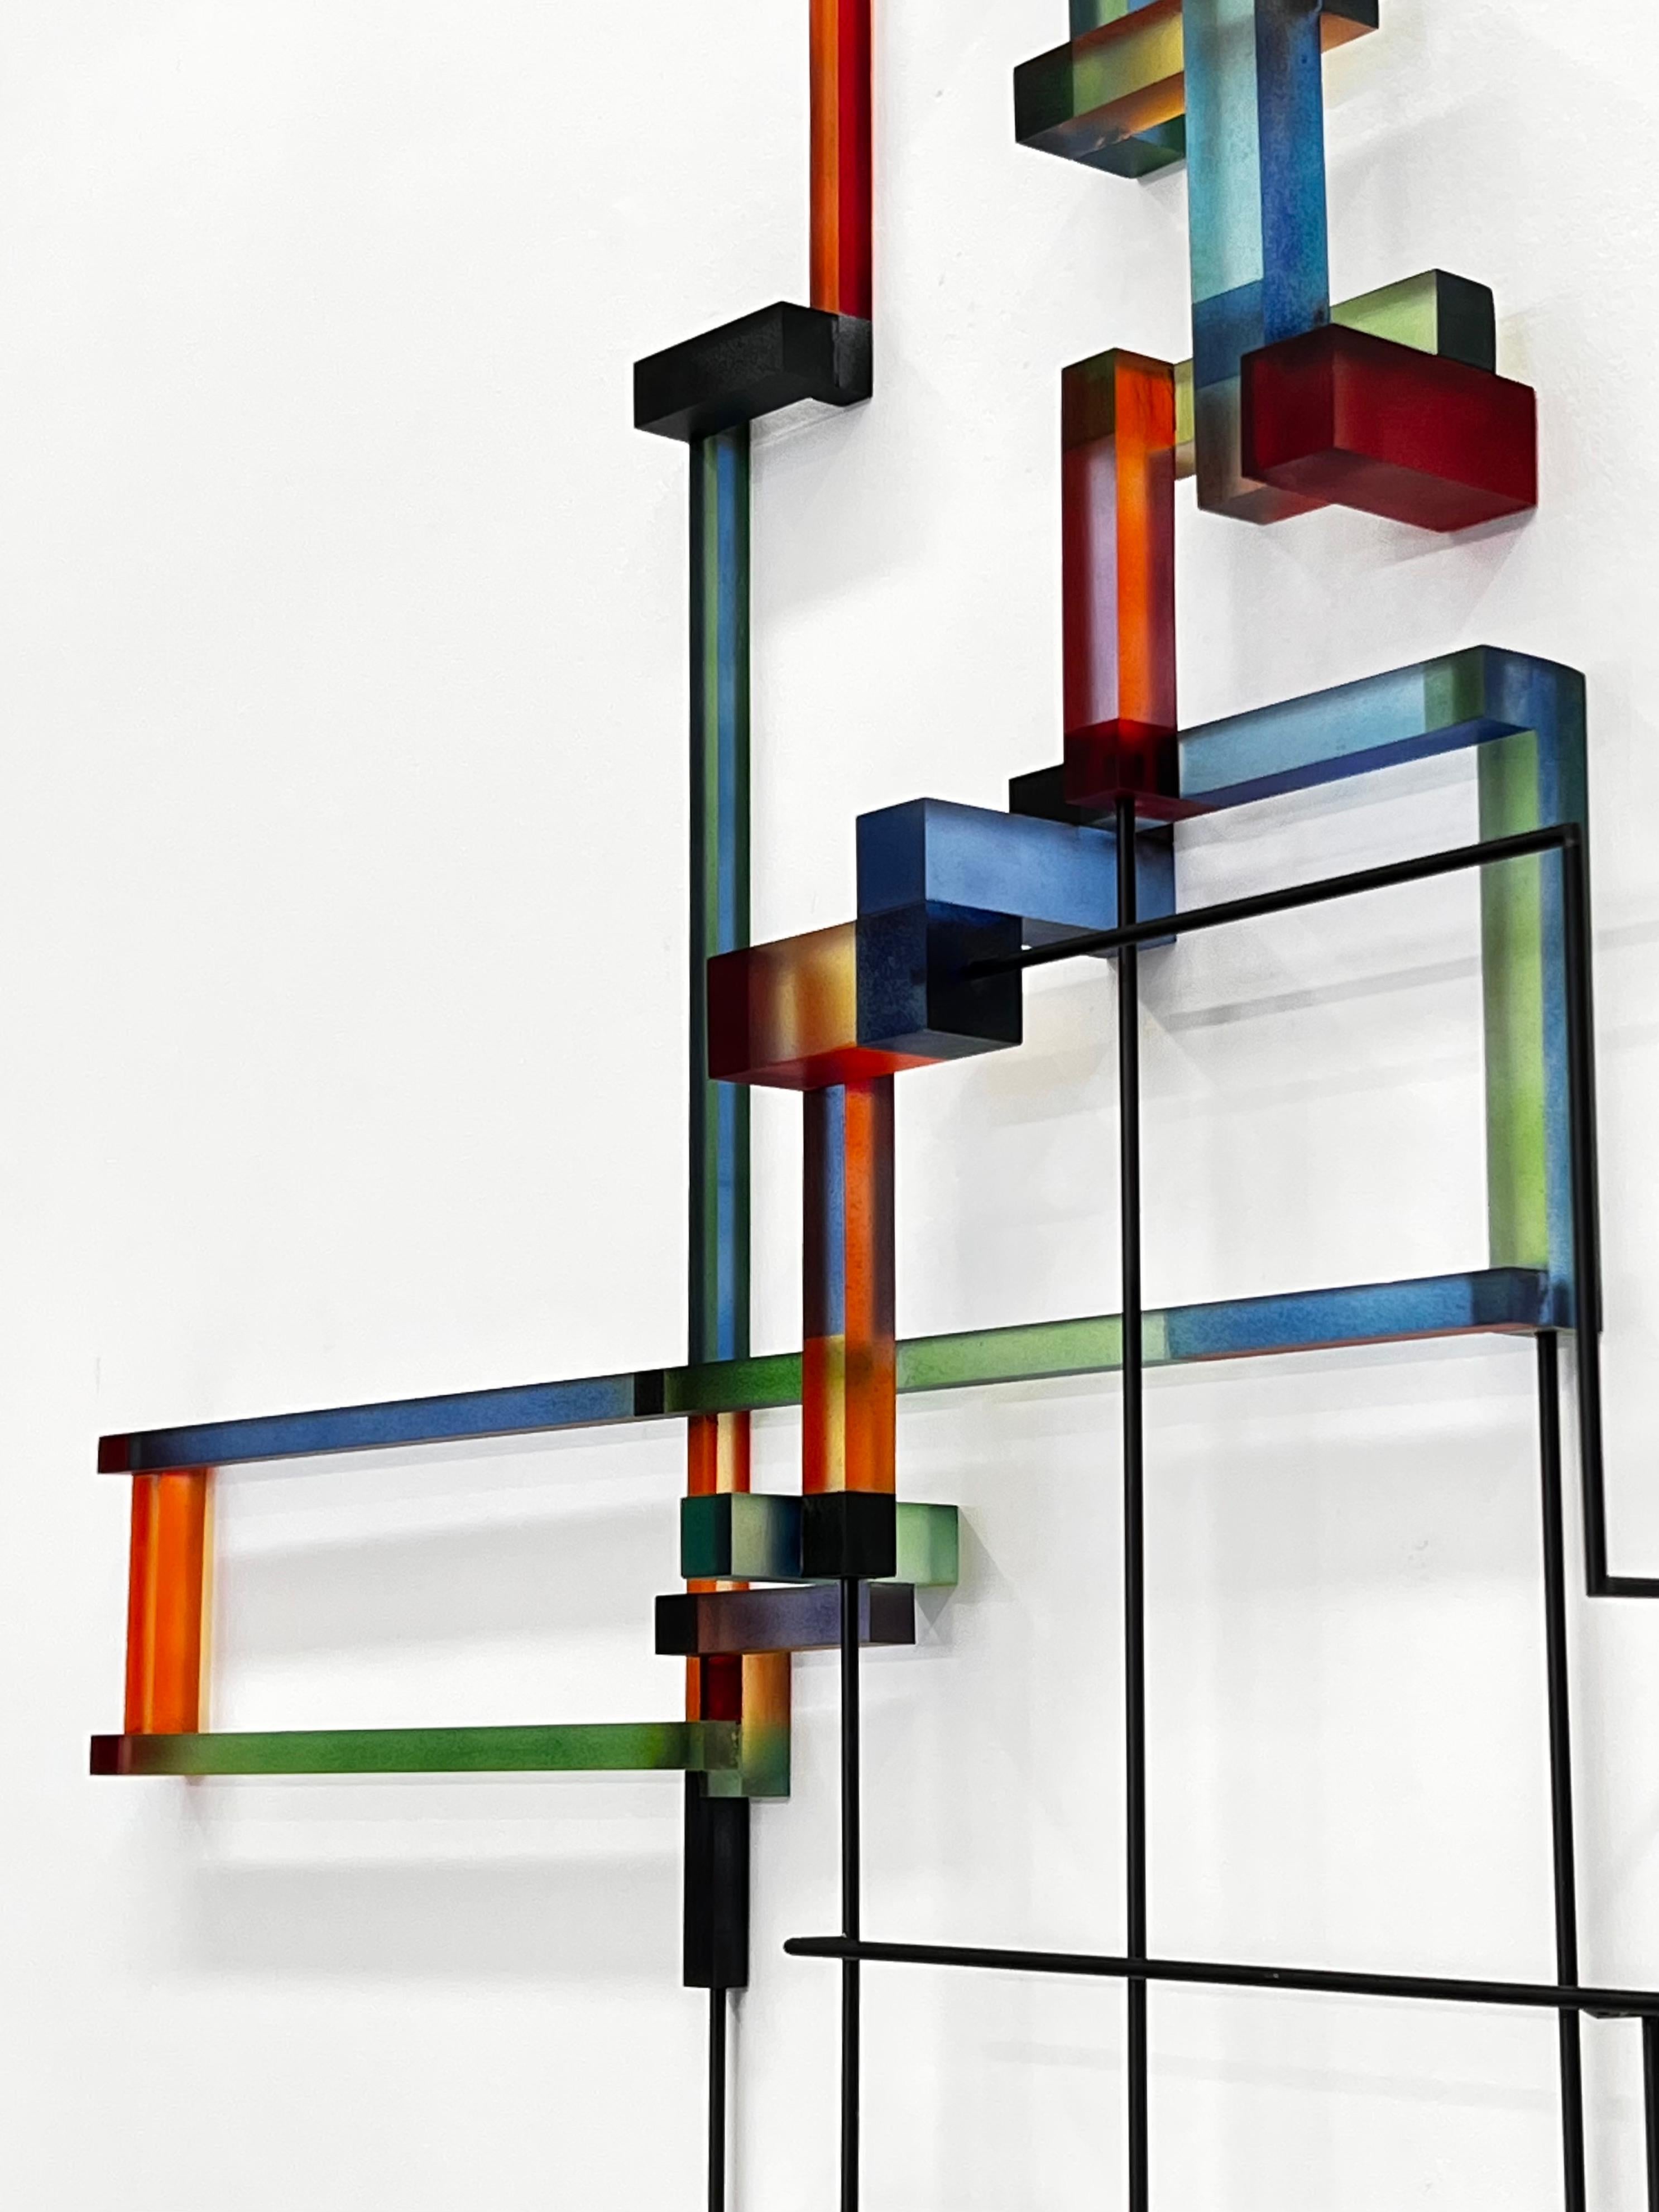 Henri Henri: zeitgenössische moderne abstrakte geometrische Skulptur – Sculpture von Greg Chann